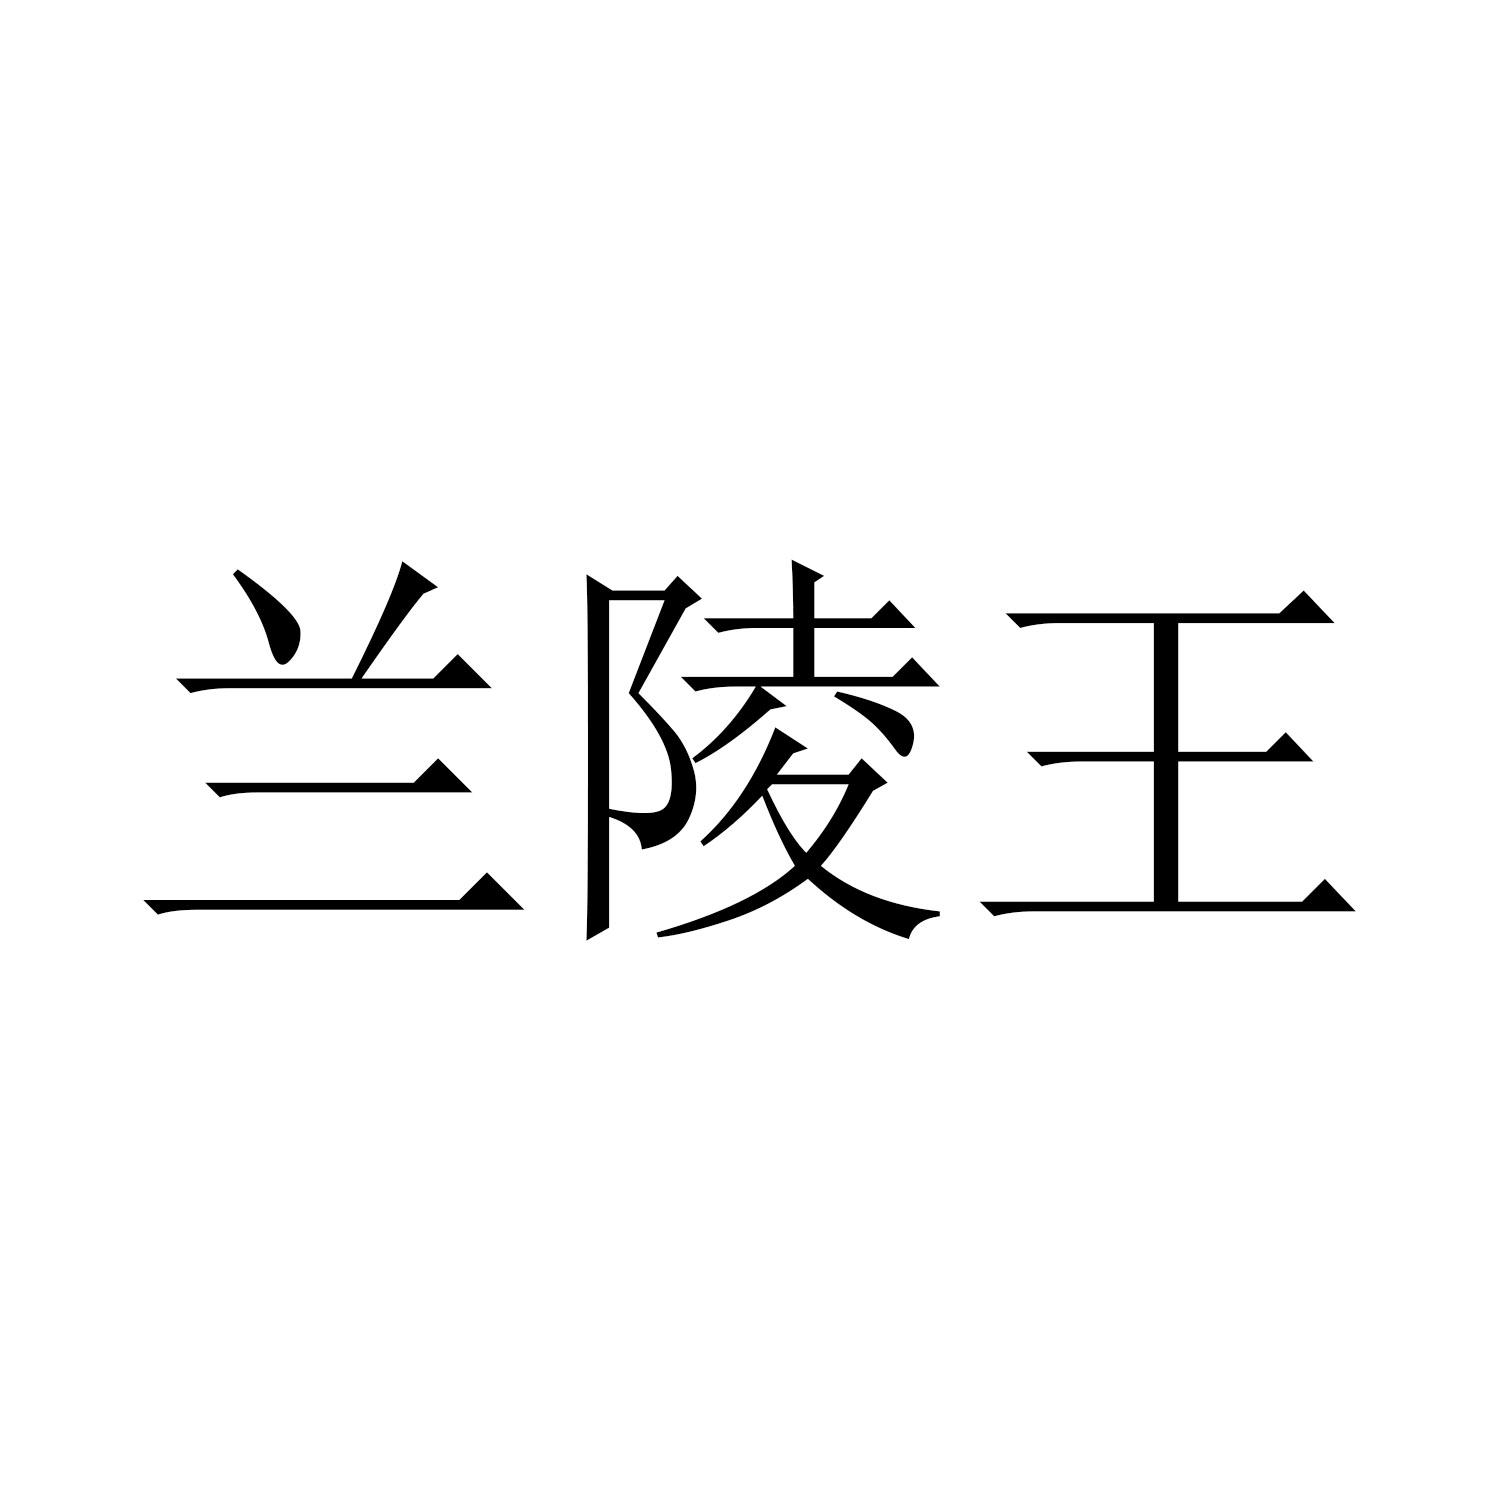 兰陵王酒logo图片